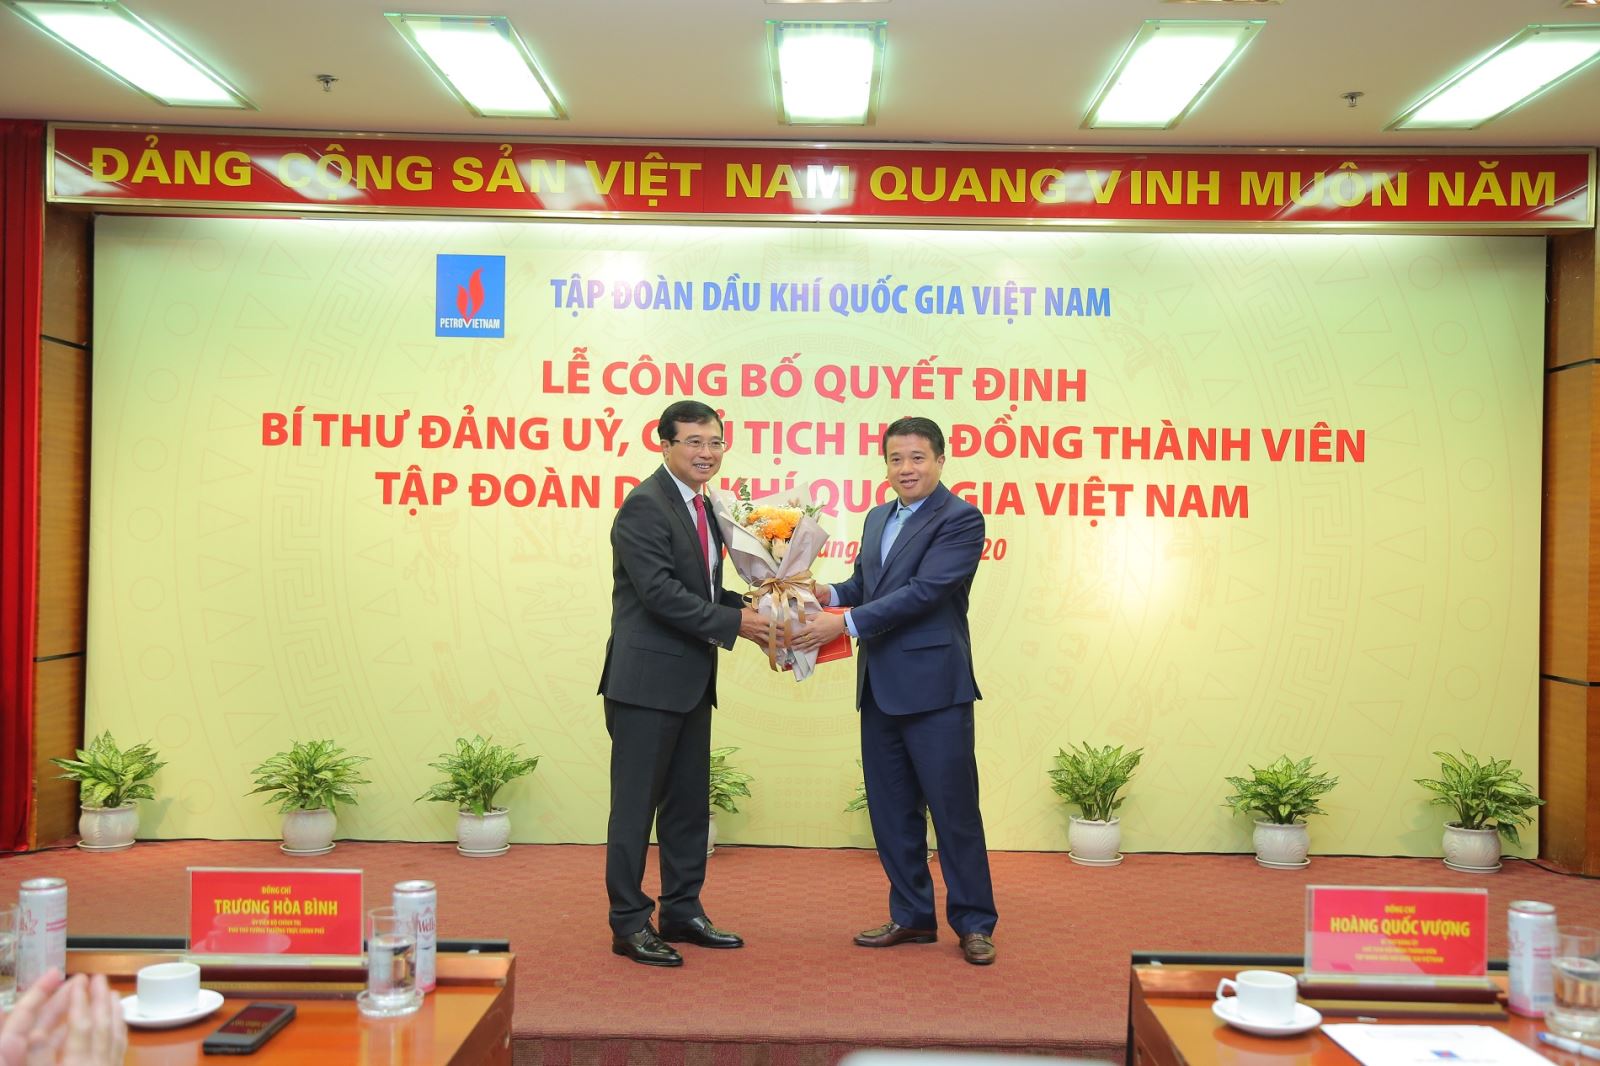 Trao Quyết định chỉ định Chủ tịch Hội đồng thành viên Tập đoàn Hoàng Quốc Vượng giữ chức Bí thư Đảng ủy Tập đoàn Dầu khí Quốc gia Việt Nam